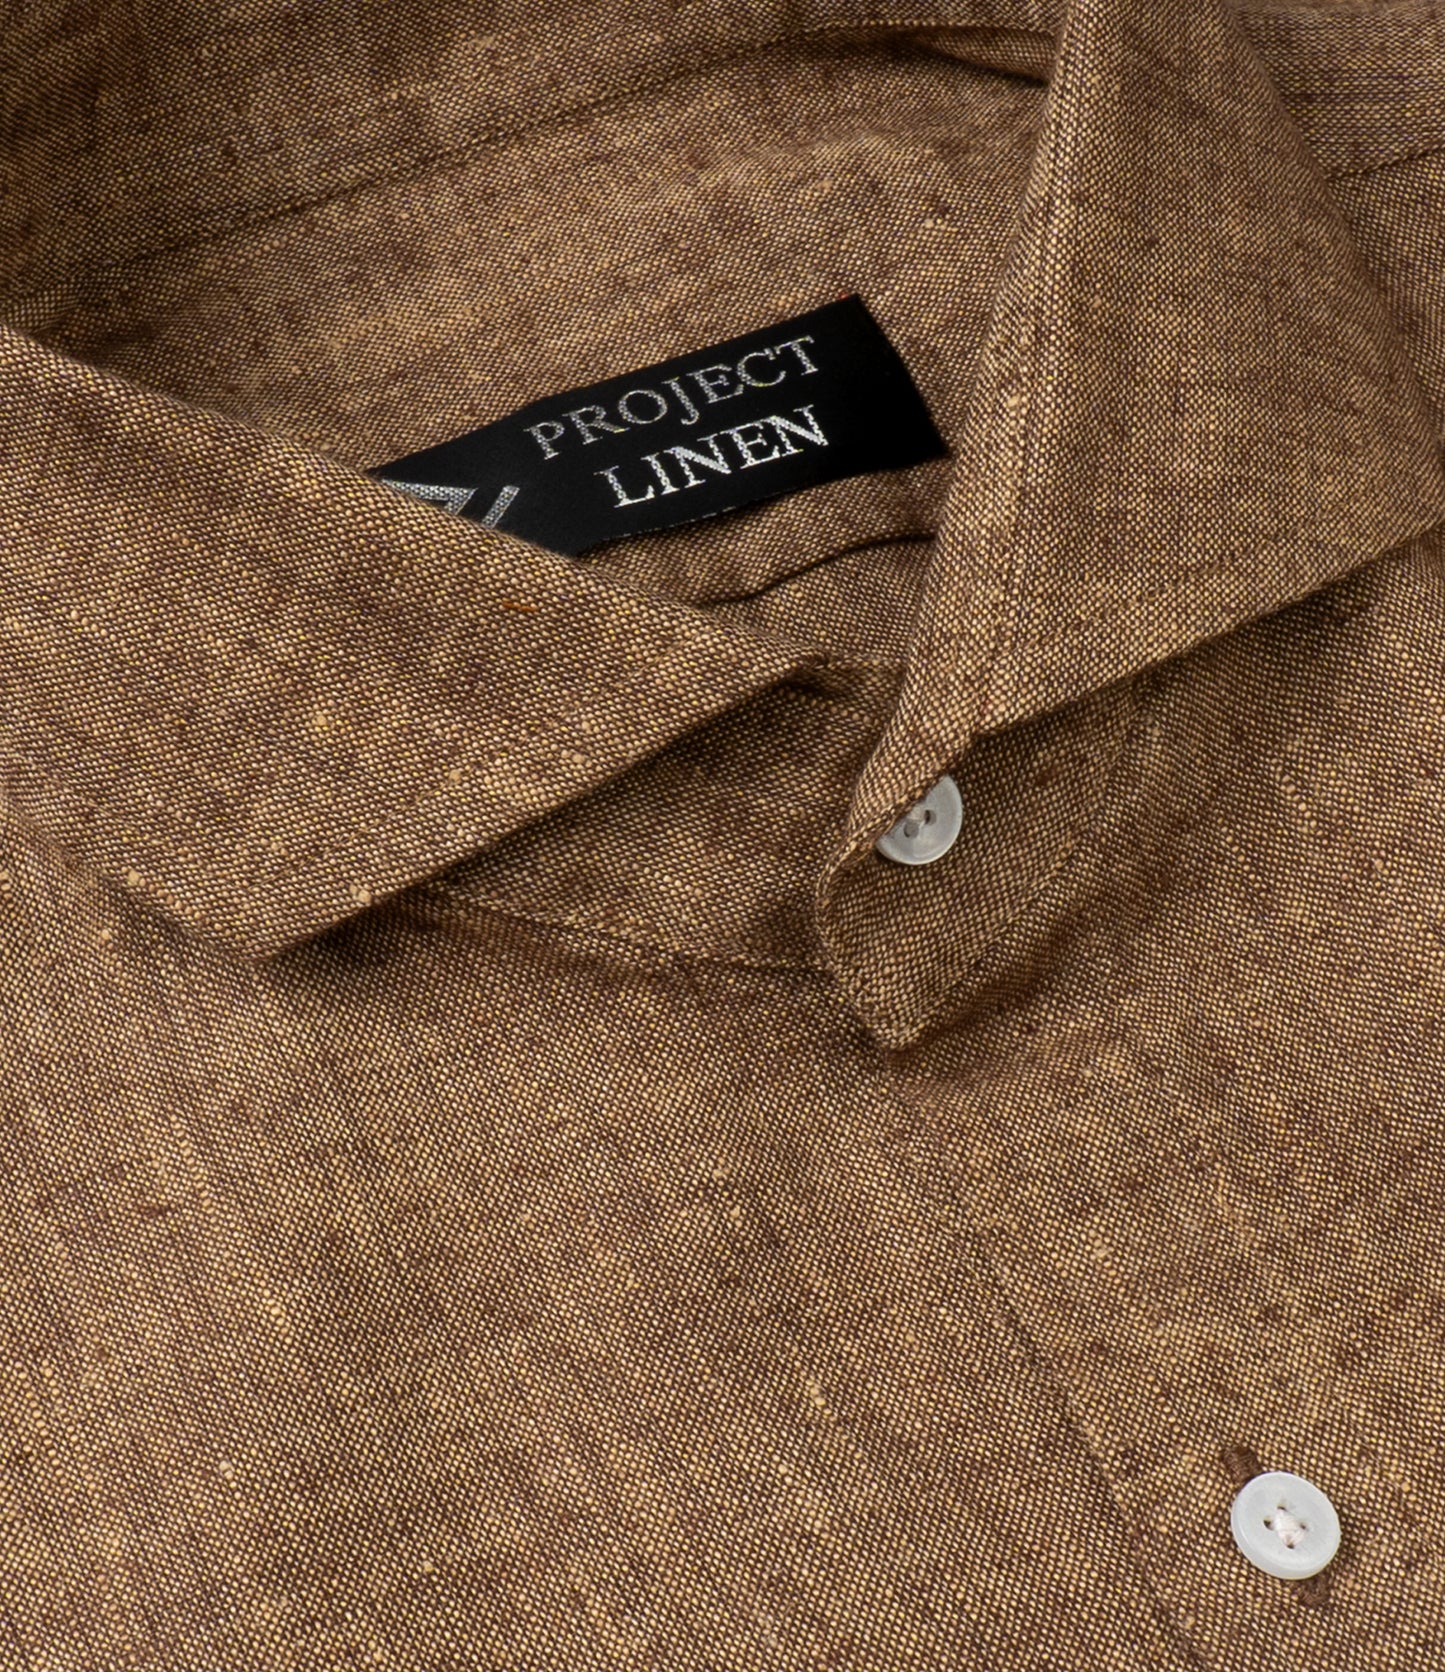 Brown Linen Shirt - Her's